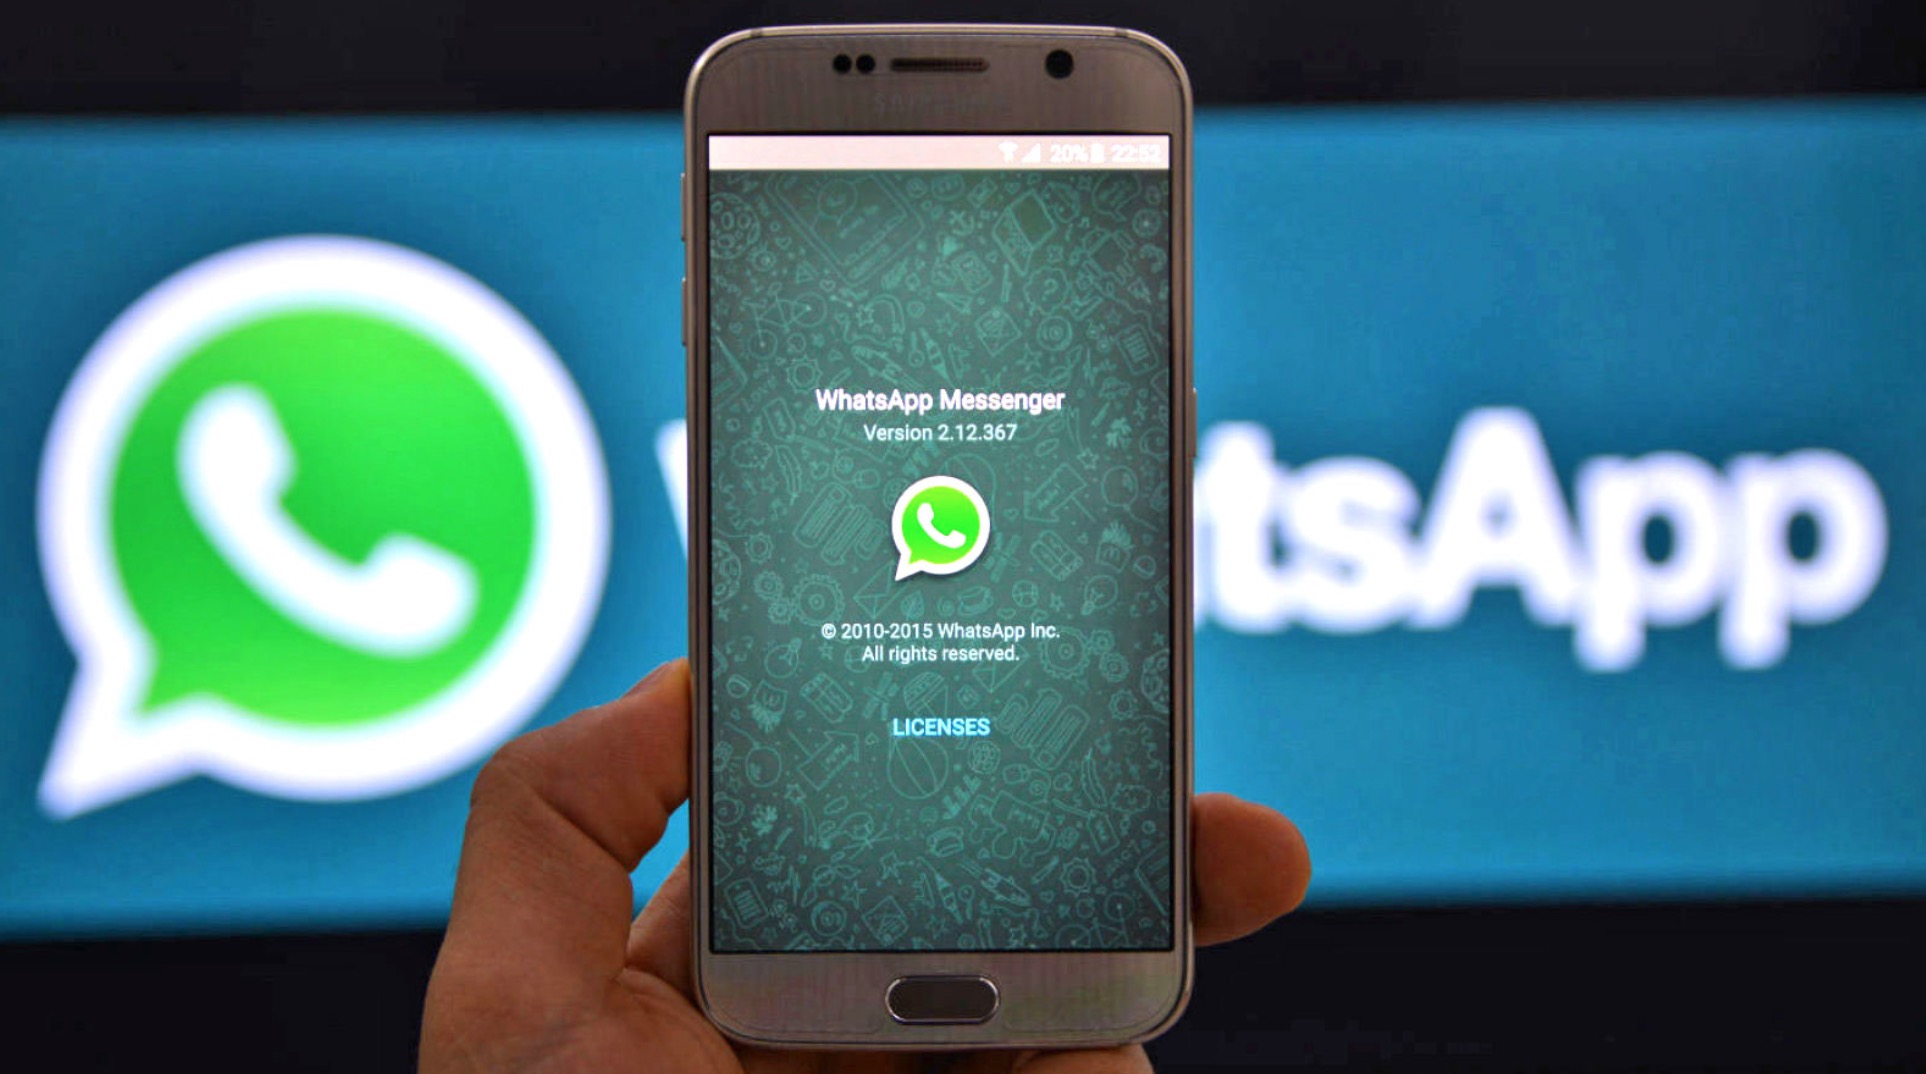 WhatsApp pagamenti in app